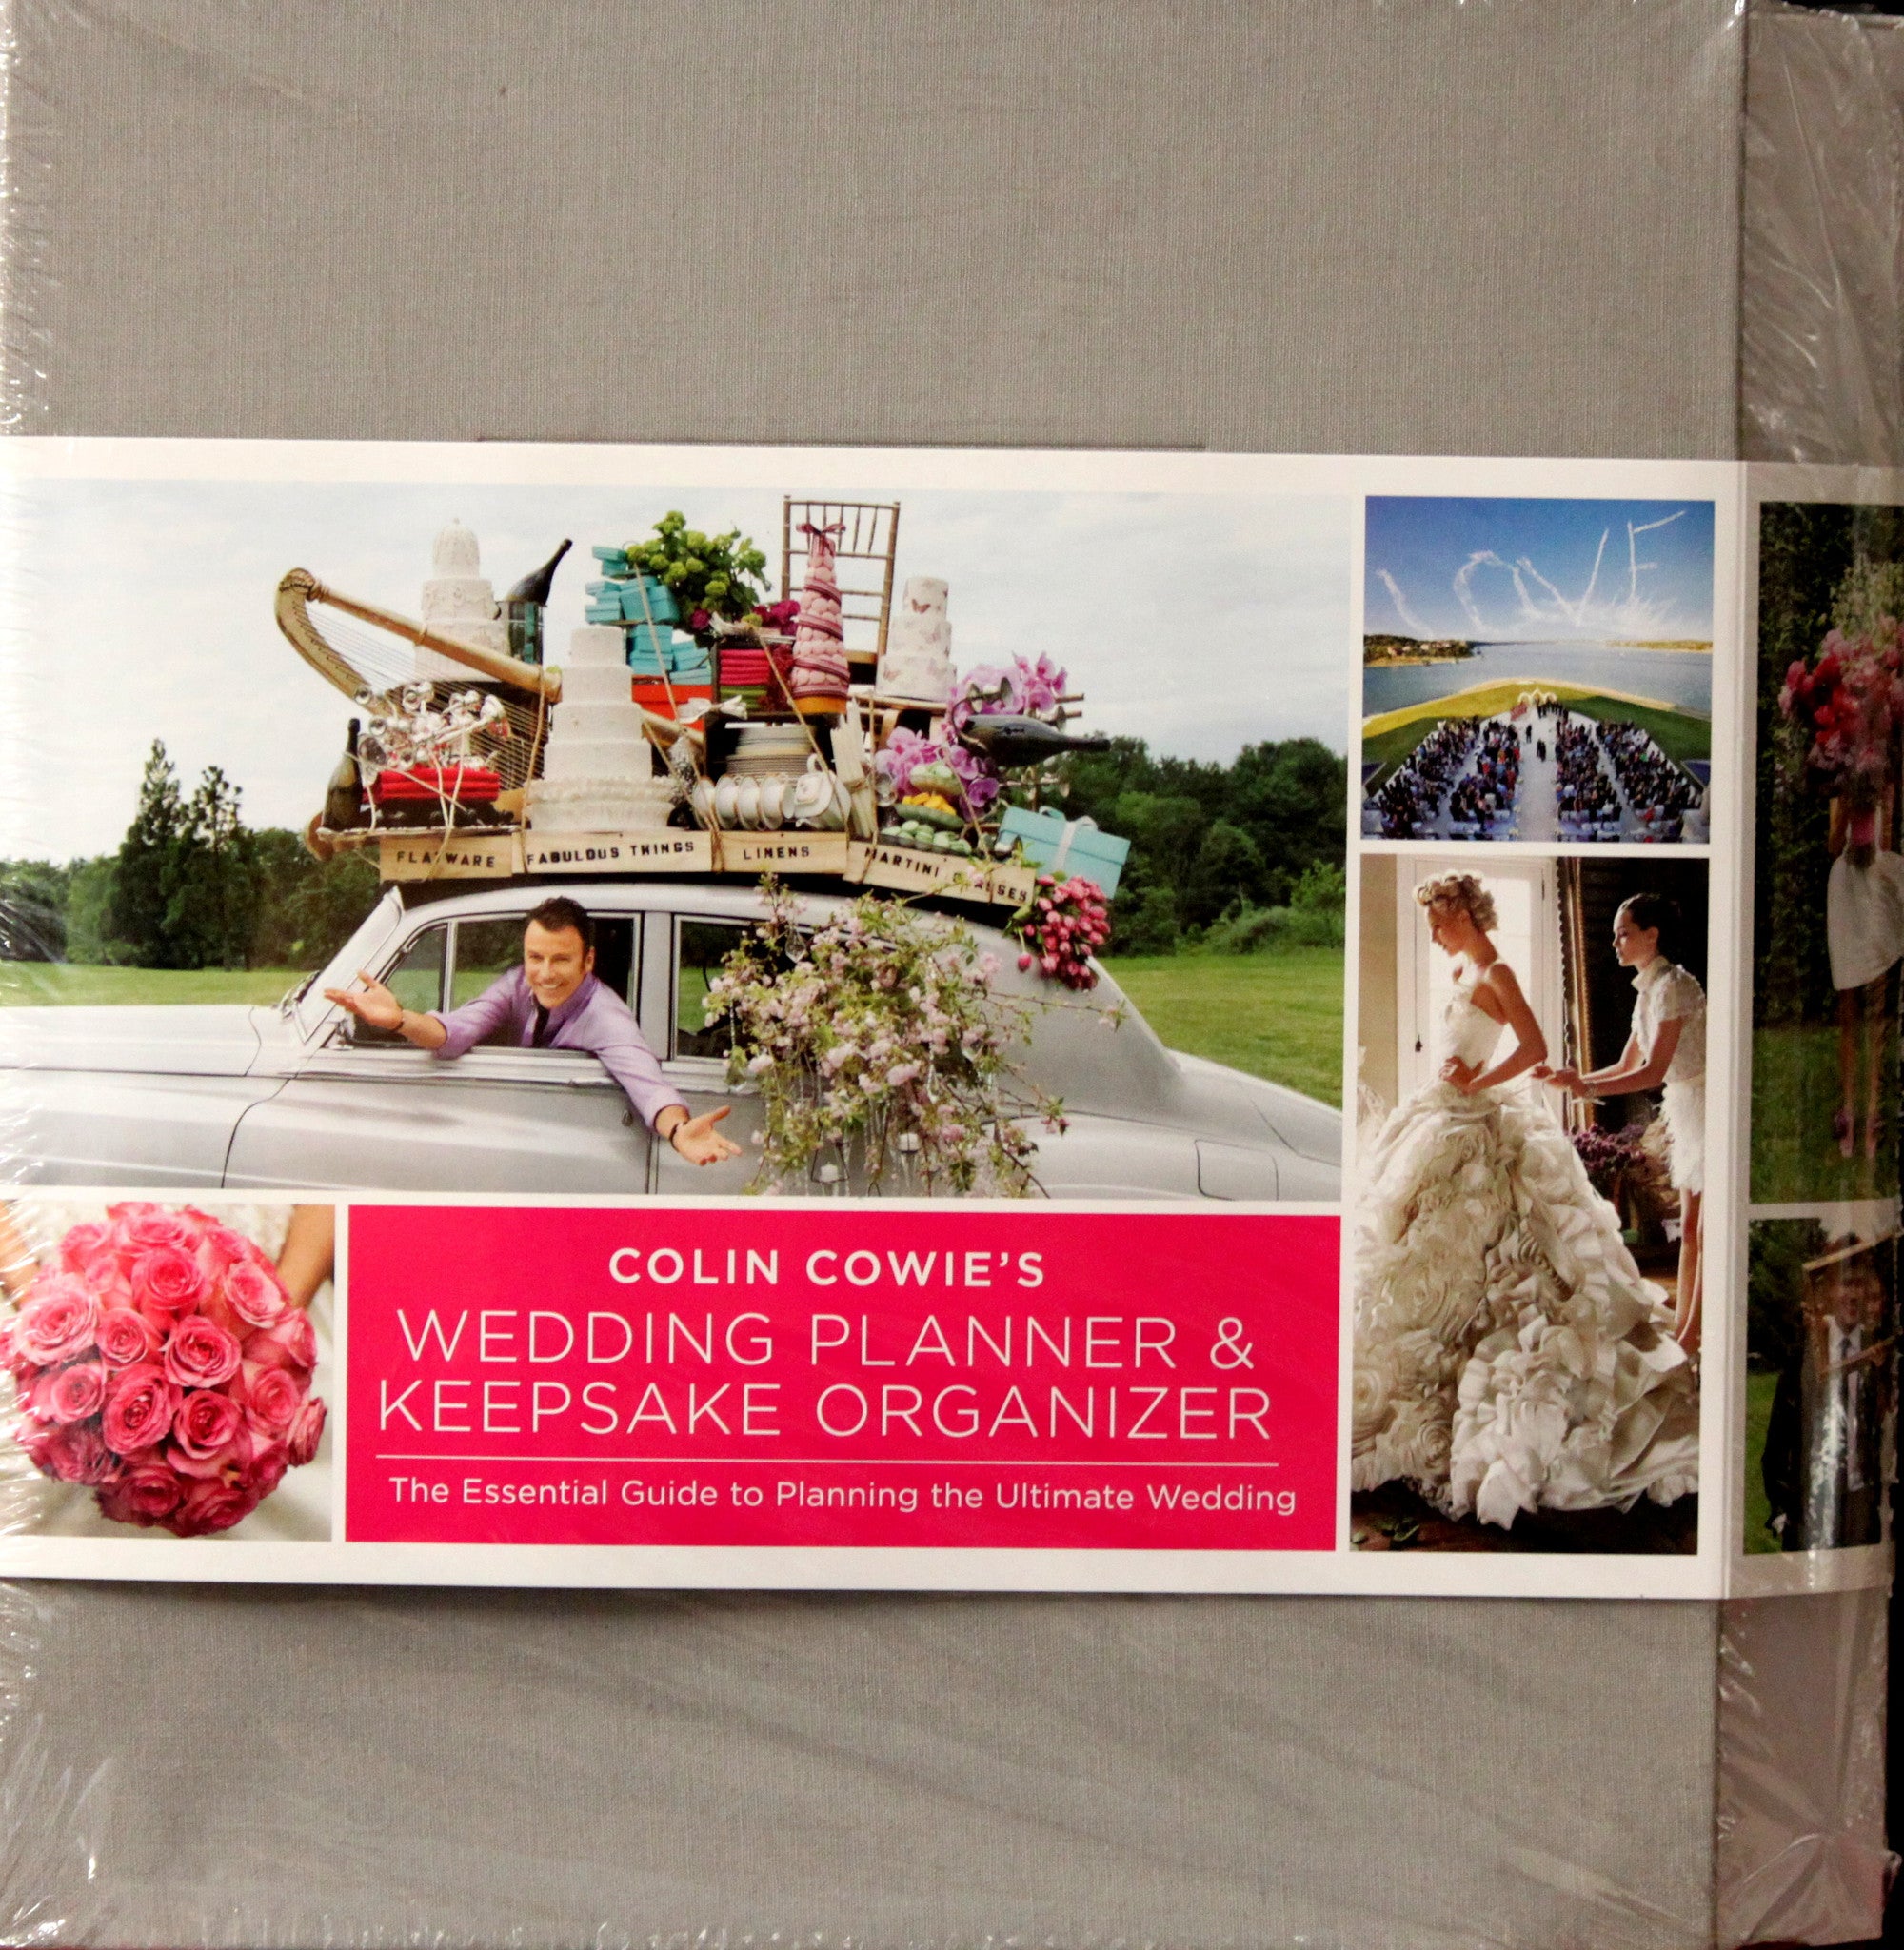 Colin Cowie's Wedding Planner & Keepsake Organizer - SCRAPBOOKFARE